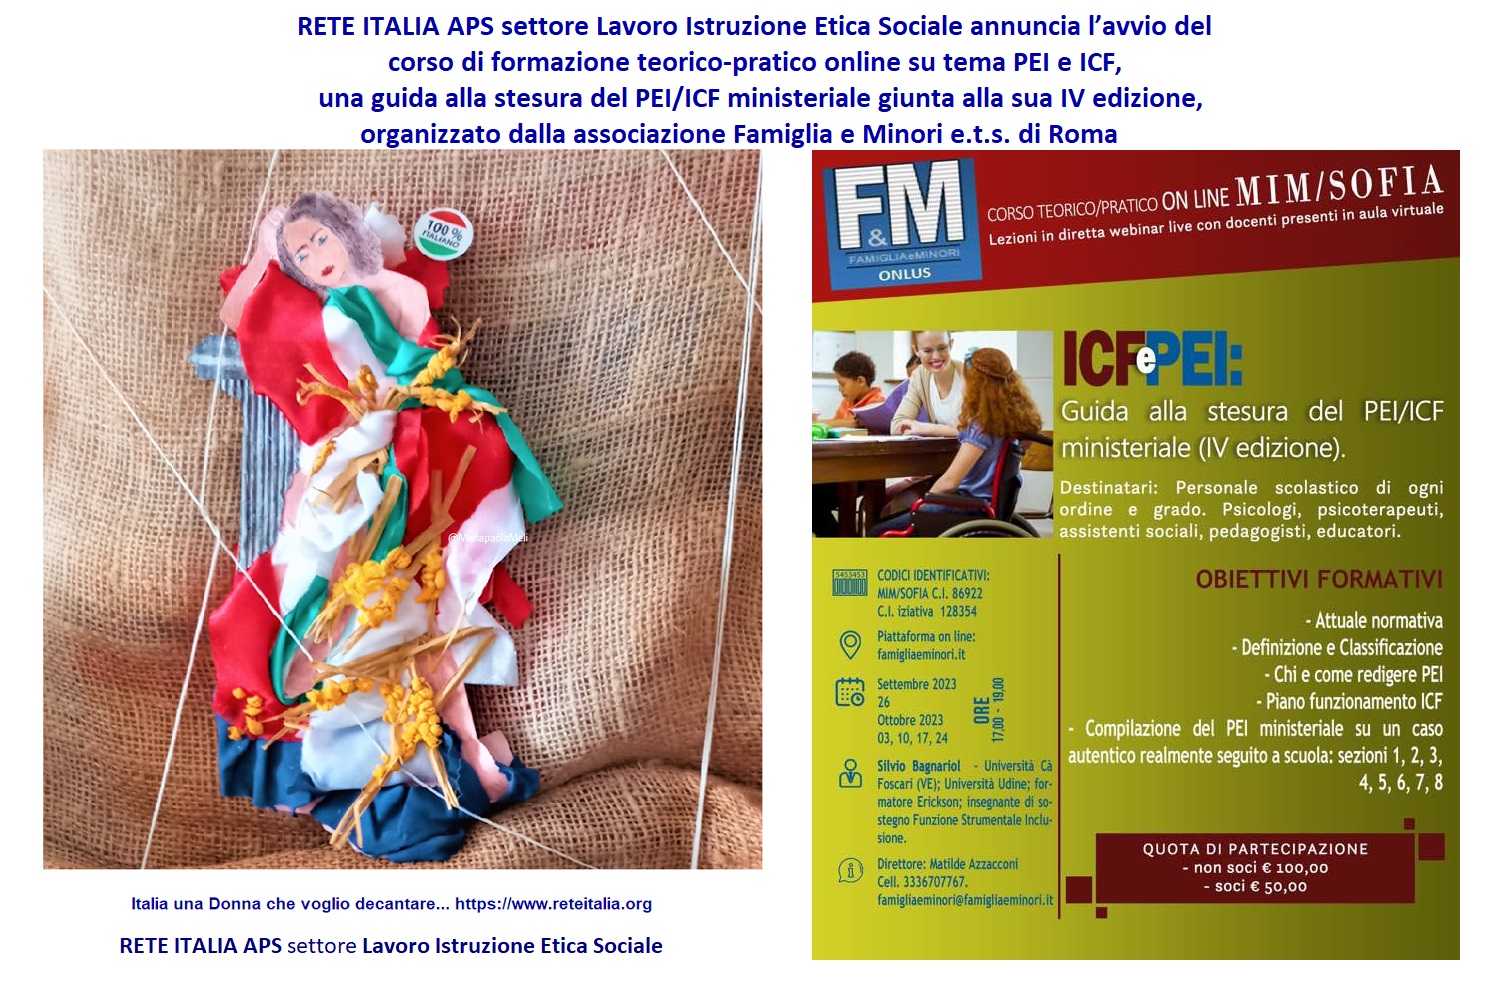 RETE ITALIA APS settore Lavoro Istruzione Etica Sociale annuncia avvio corso formazione teorico pratico online PEI e ICF